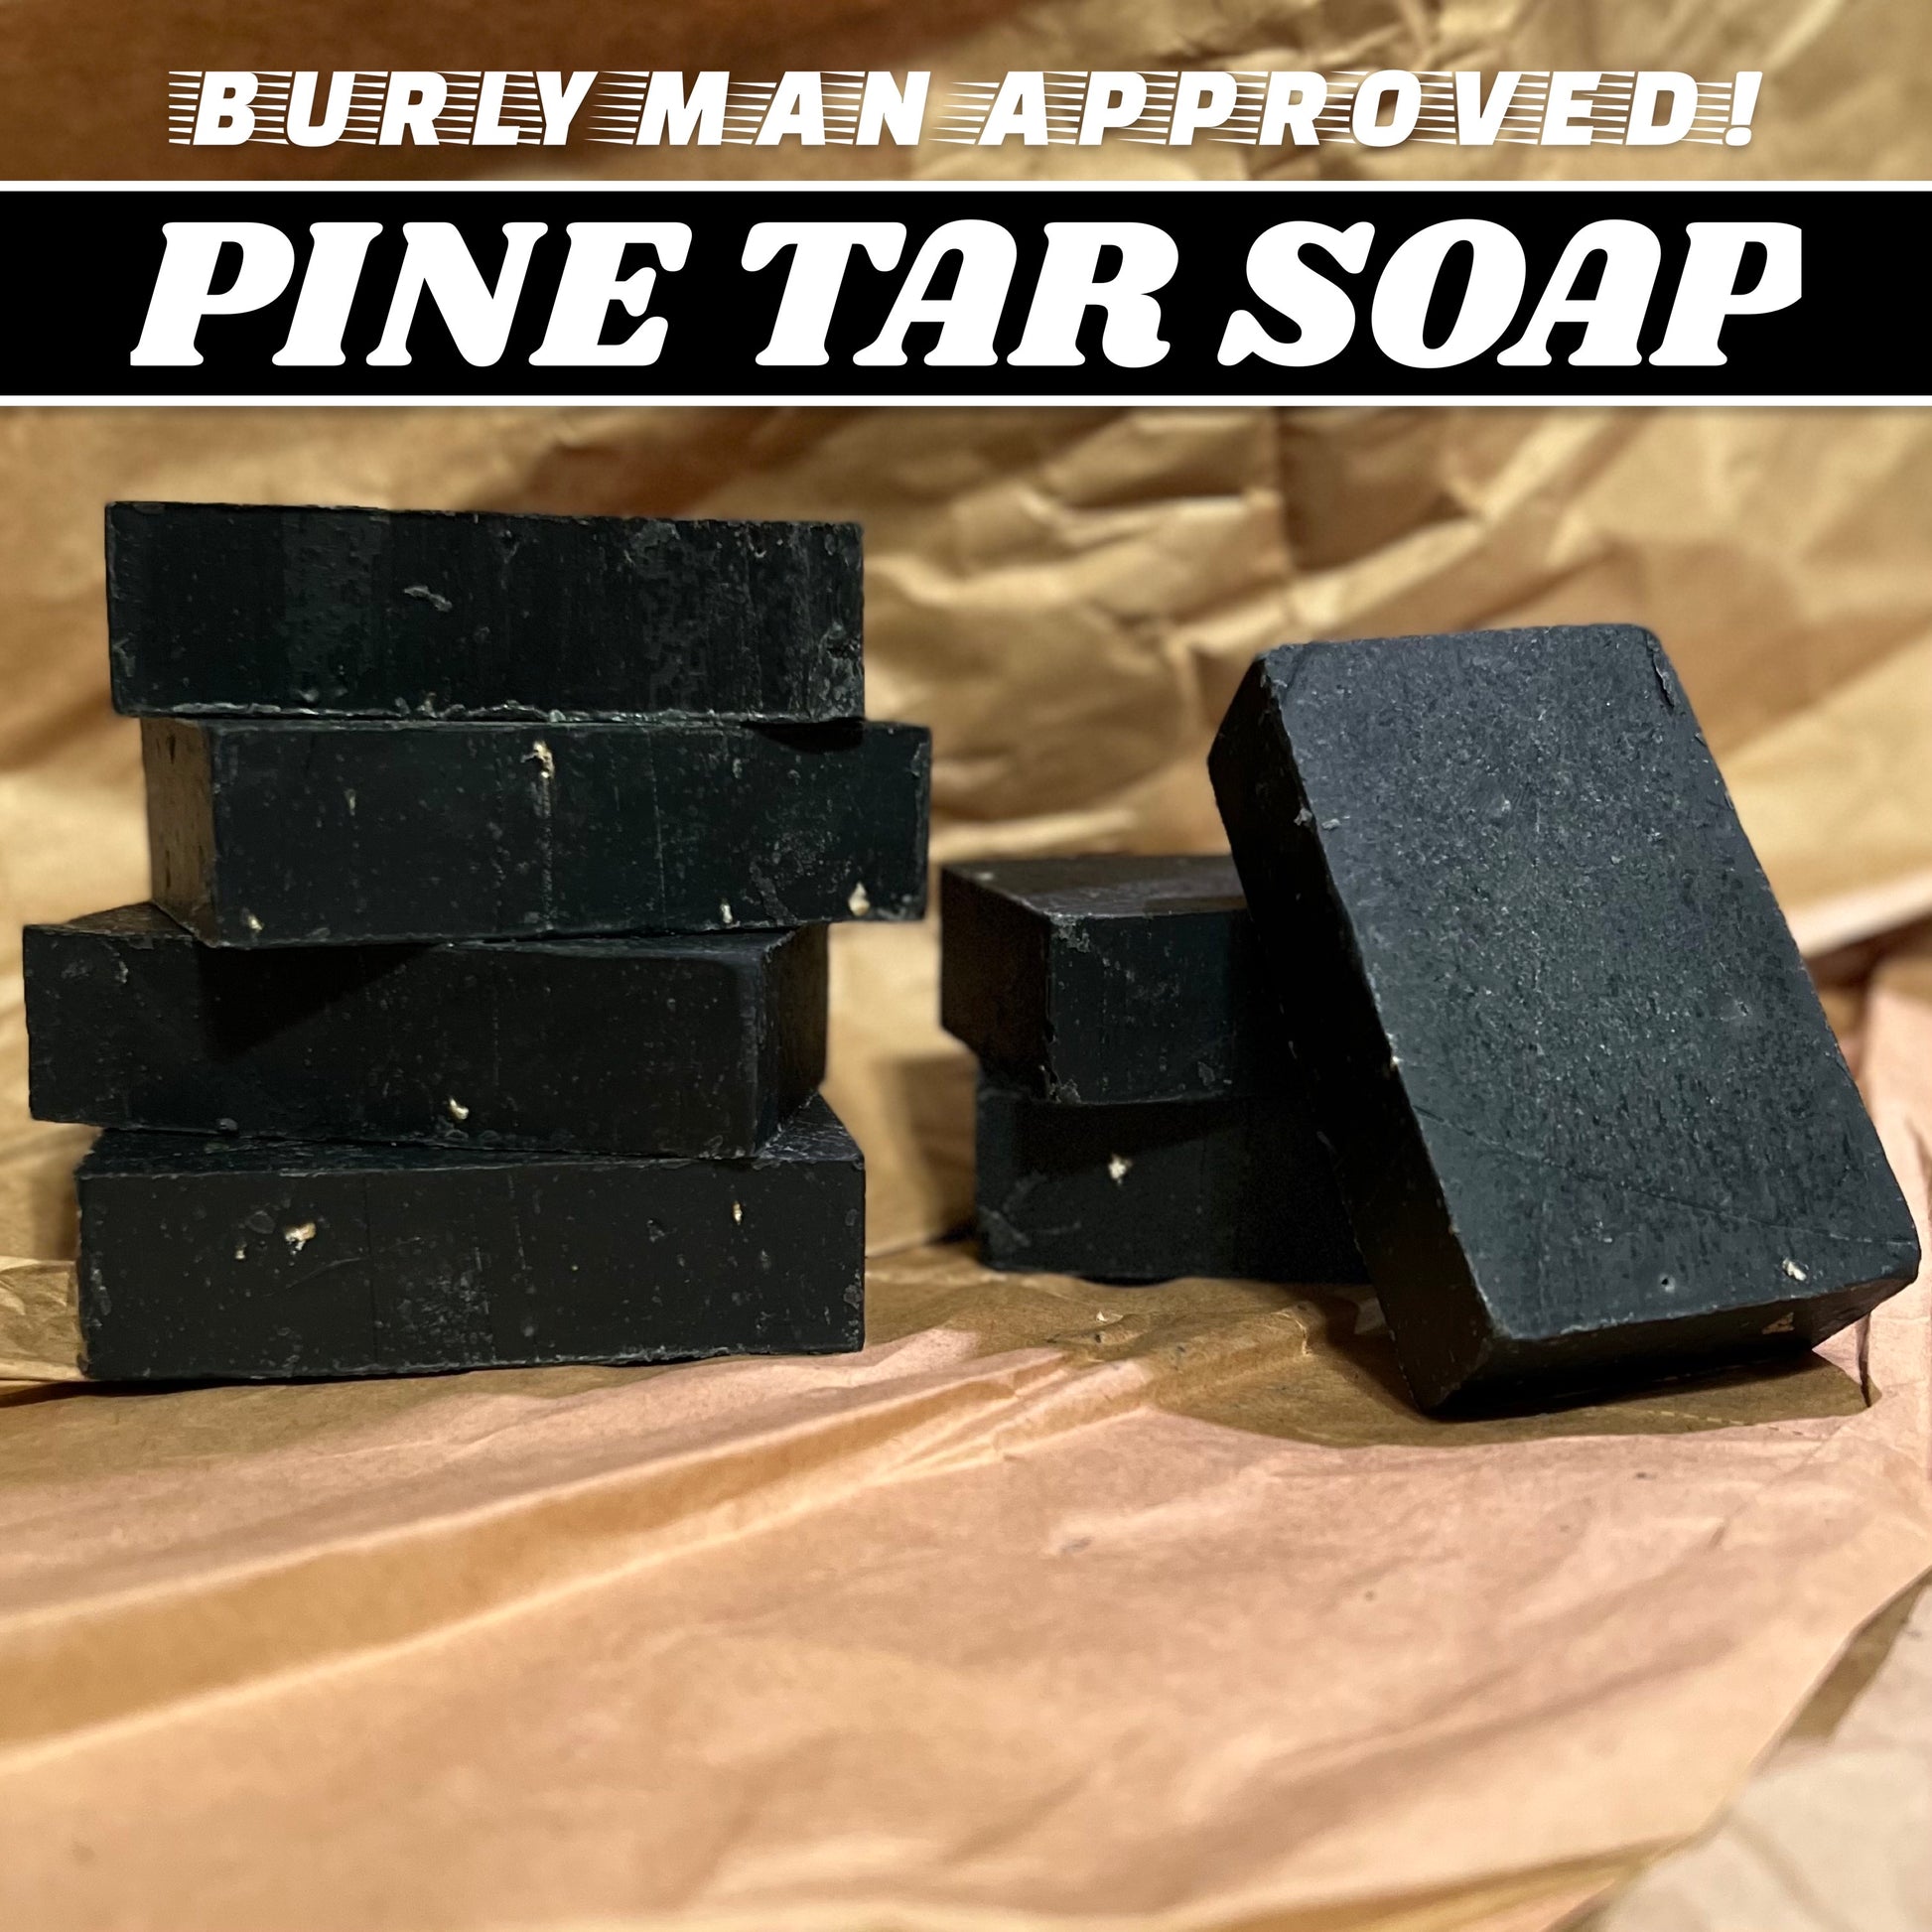 Pine Tar & Lemongrass - Bearsville Soap Company